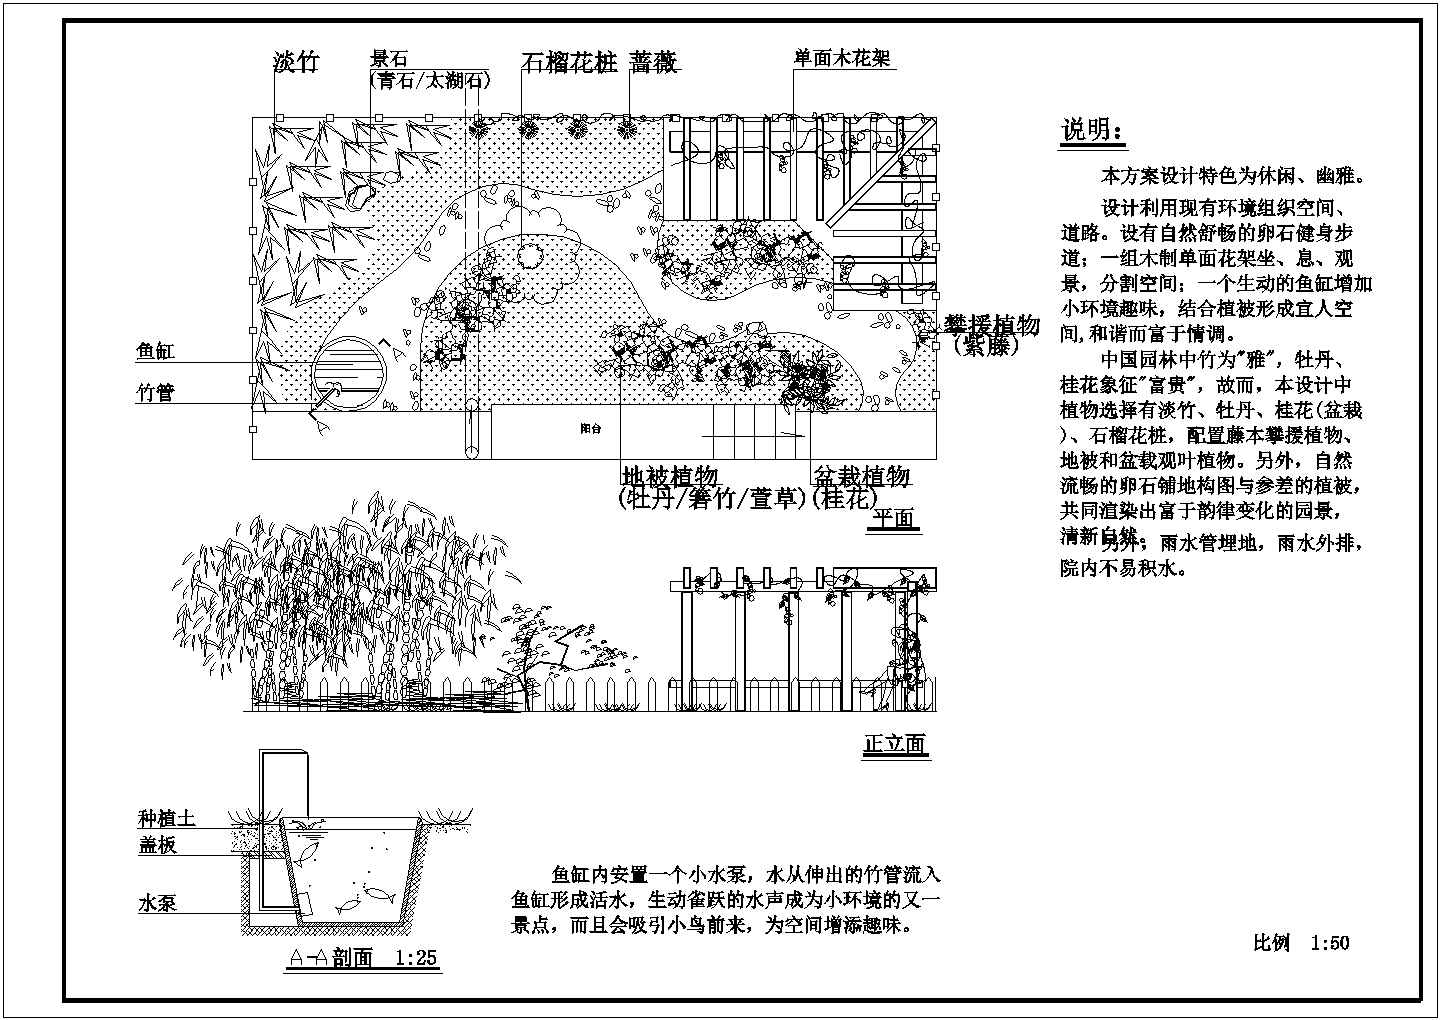 上海居民外环小庭院详细建筑施工图